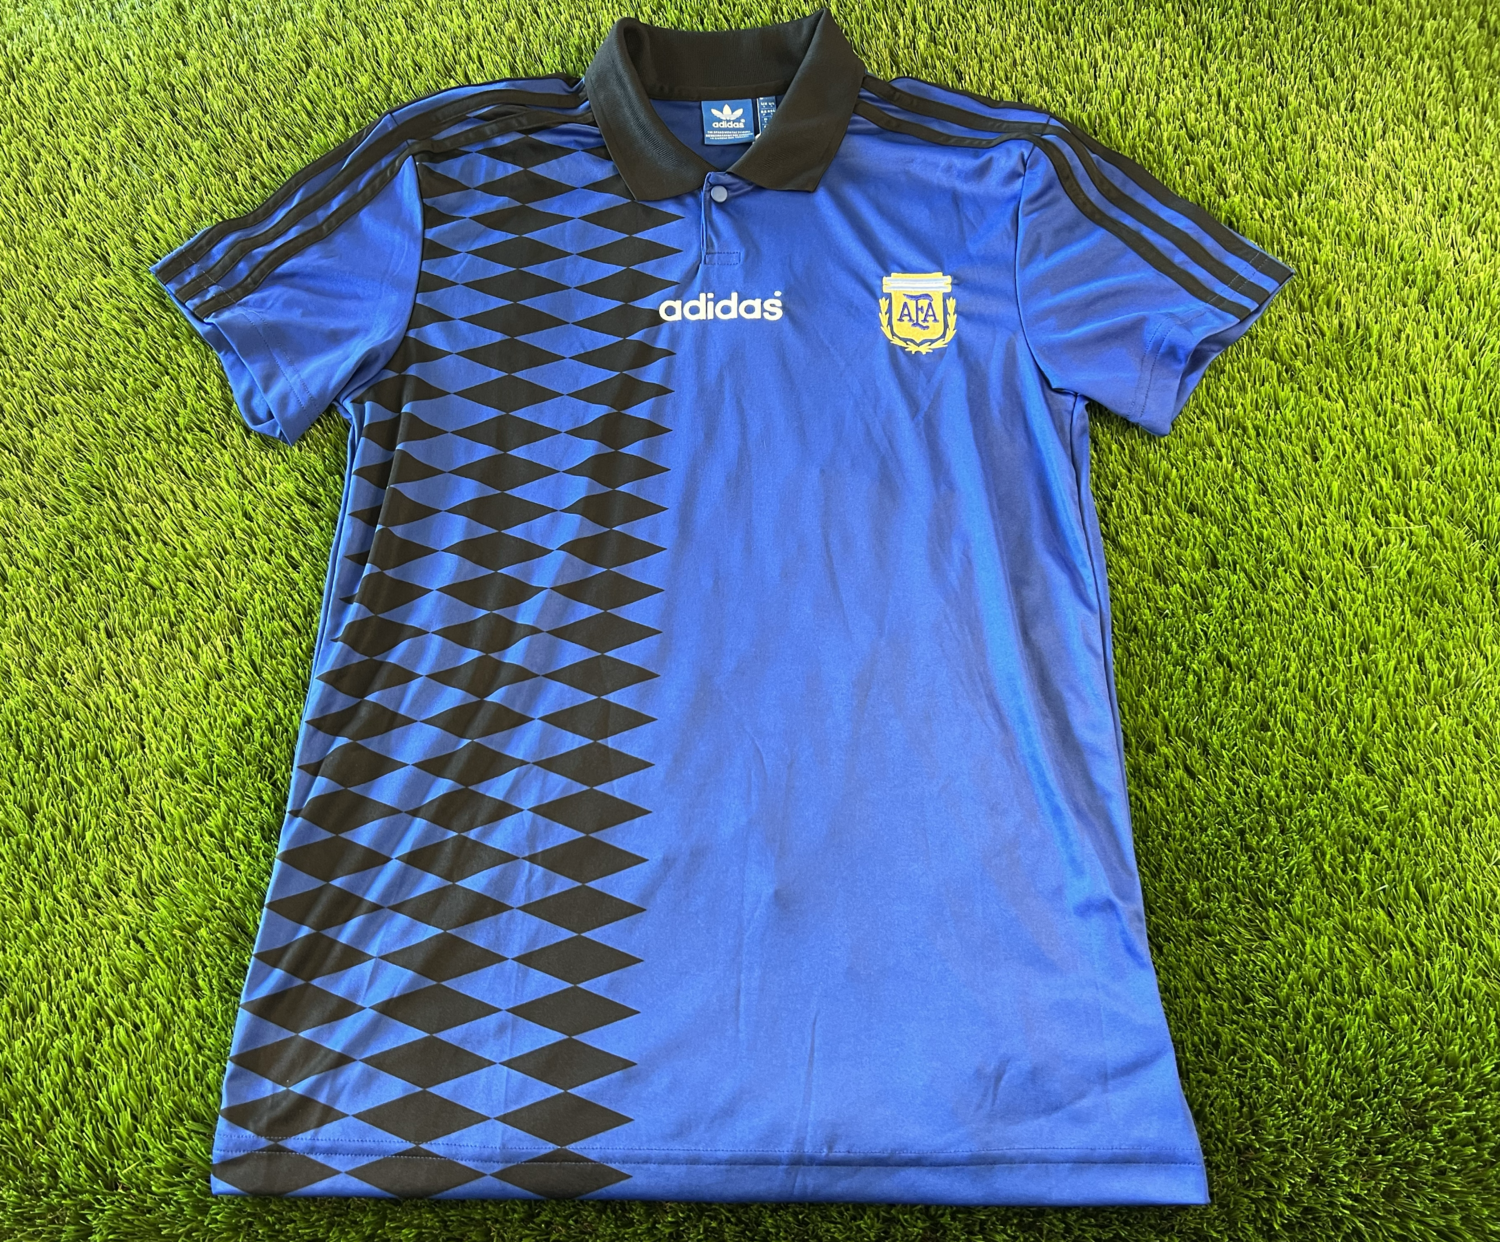 נבחרת ארגנטינה מדי חוץ 1994 - מהדורה מוגבלת